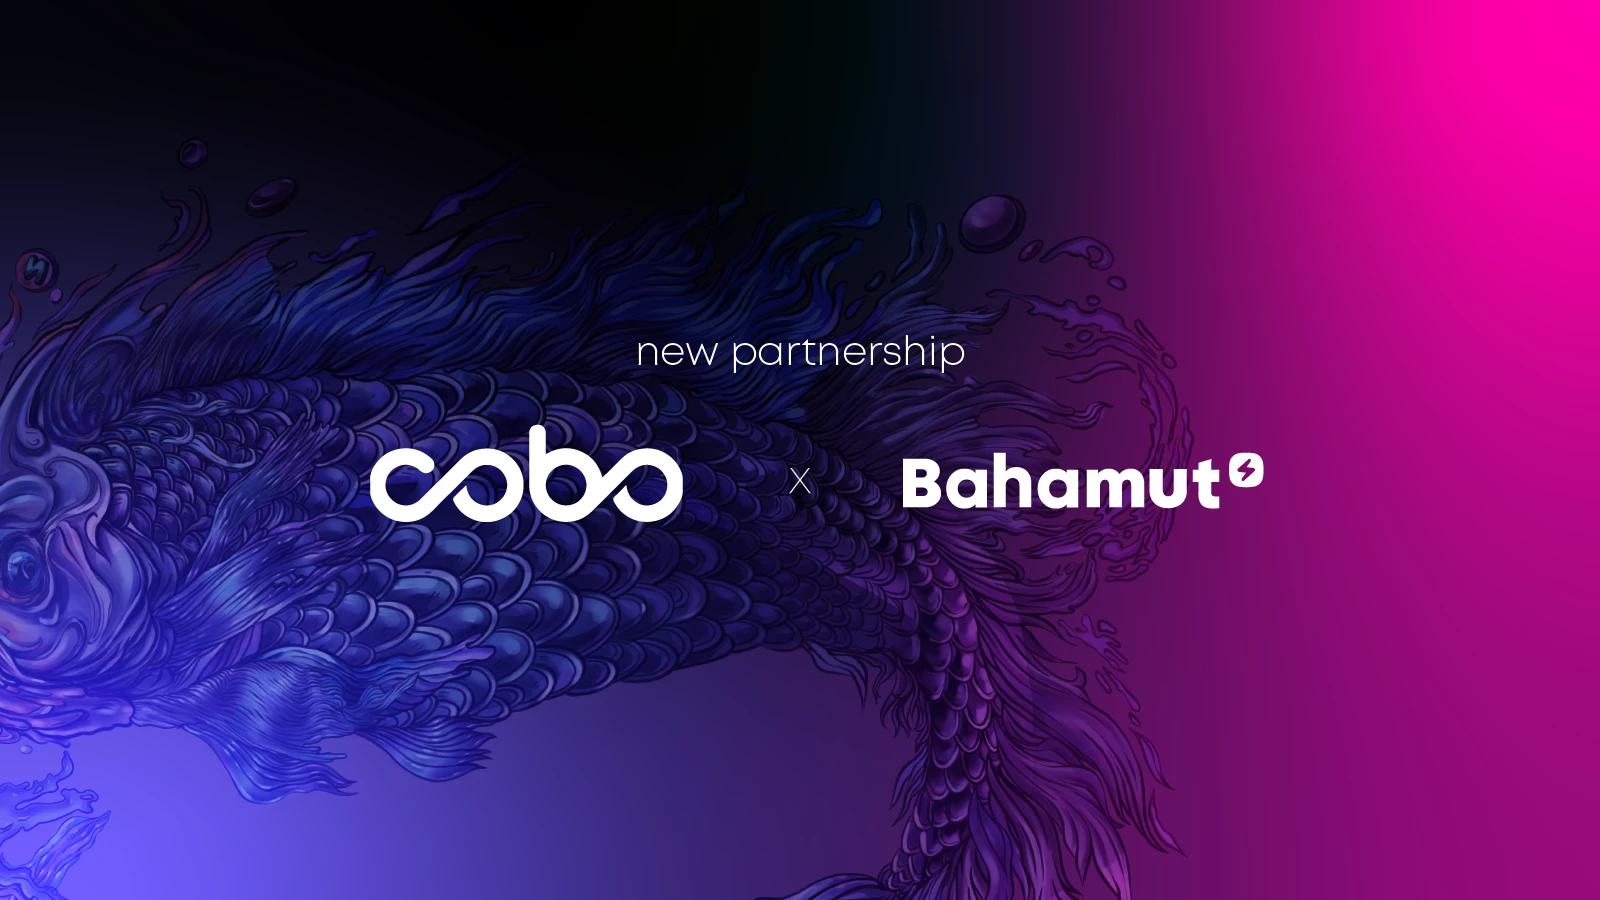 La plateforme blockchain Bahamut s'associe à Cobo pour accroître l'efficacité et permettre l'achèvement de la chaîne.